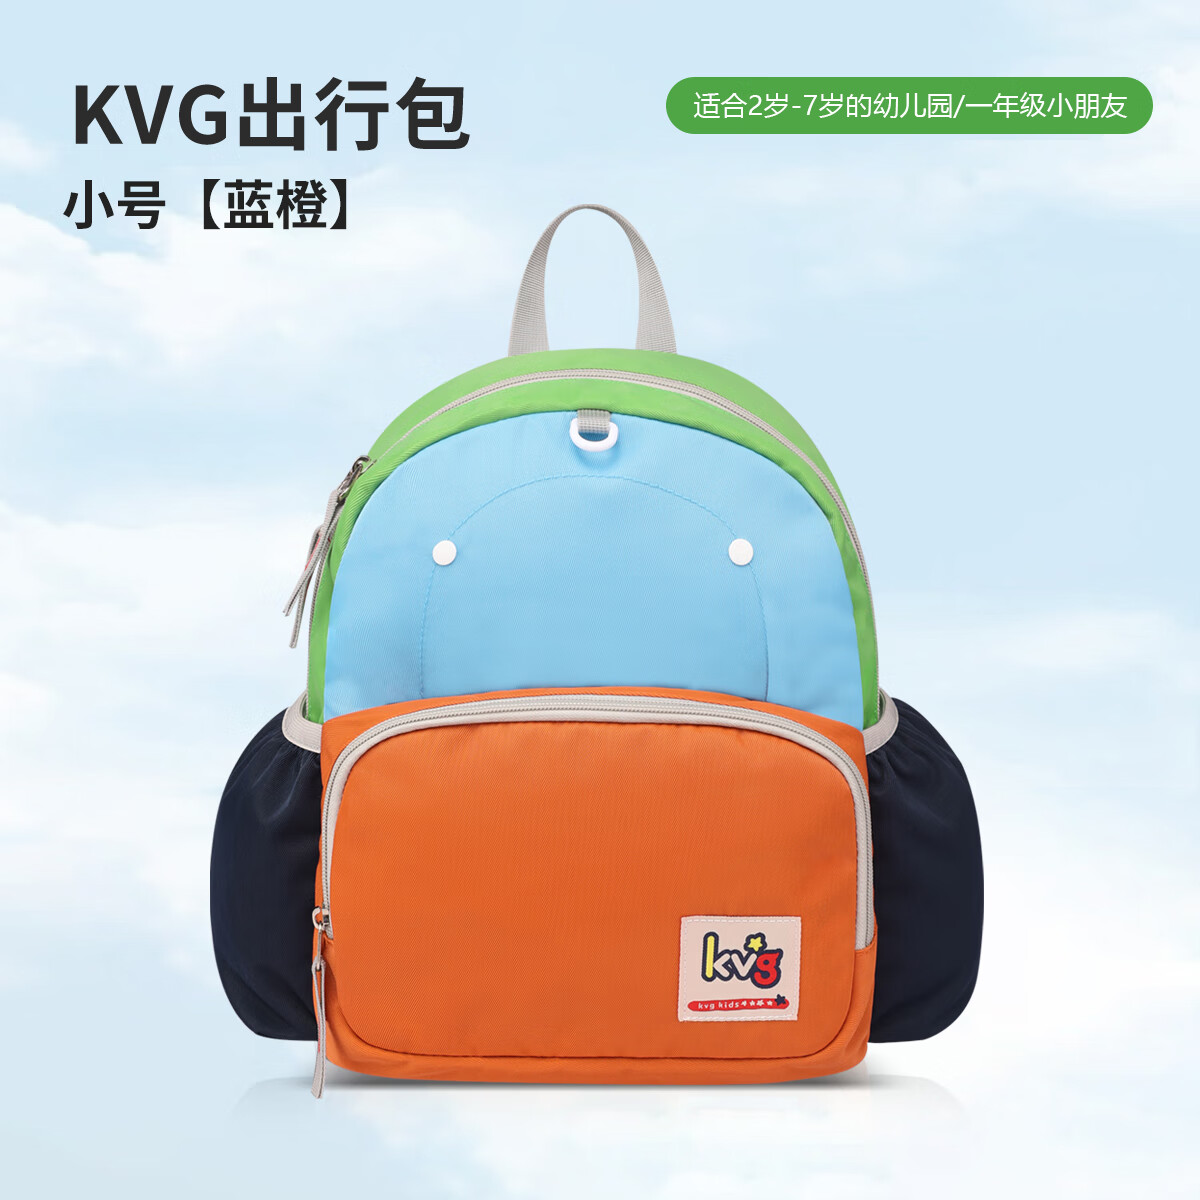 KVG幼儿园书包超轻便宝宝亲子户外包出游学包双肩背包 蓝橙色小号+电子换新卡